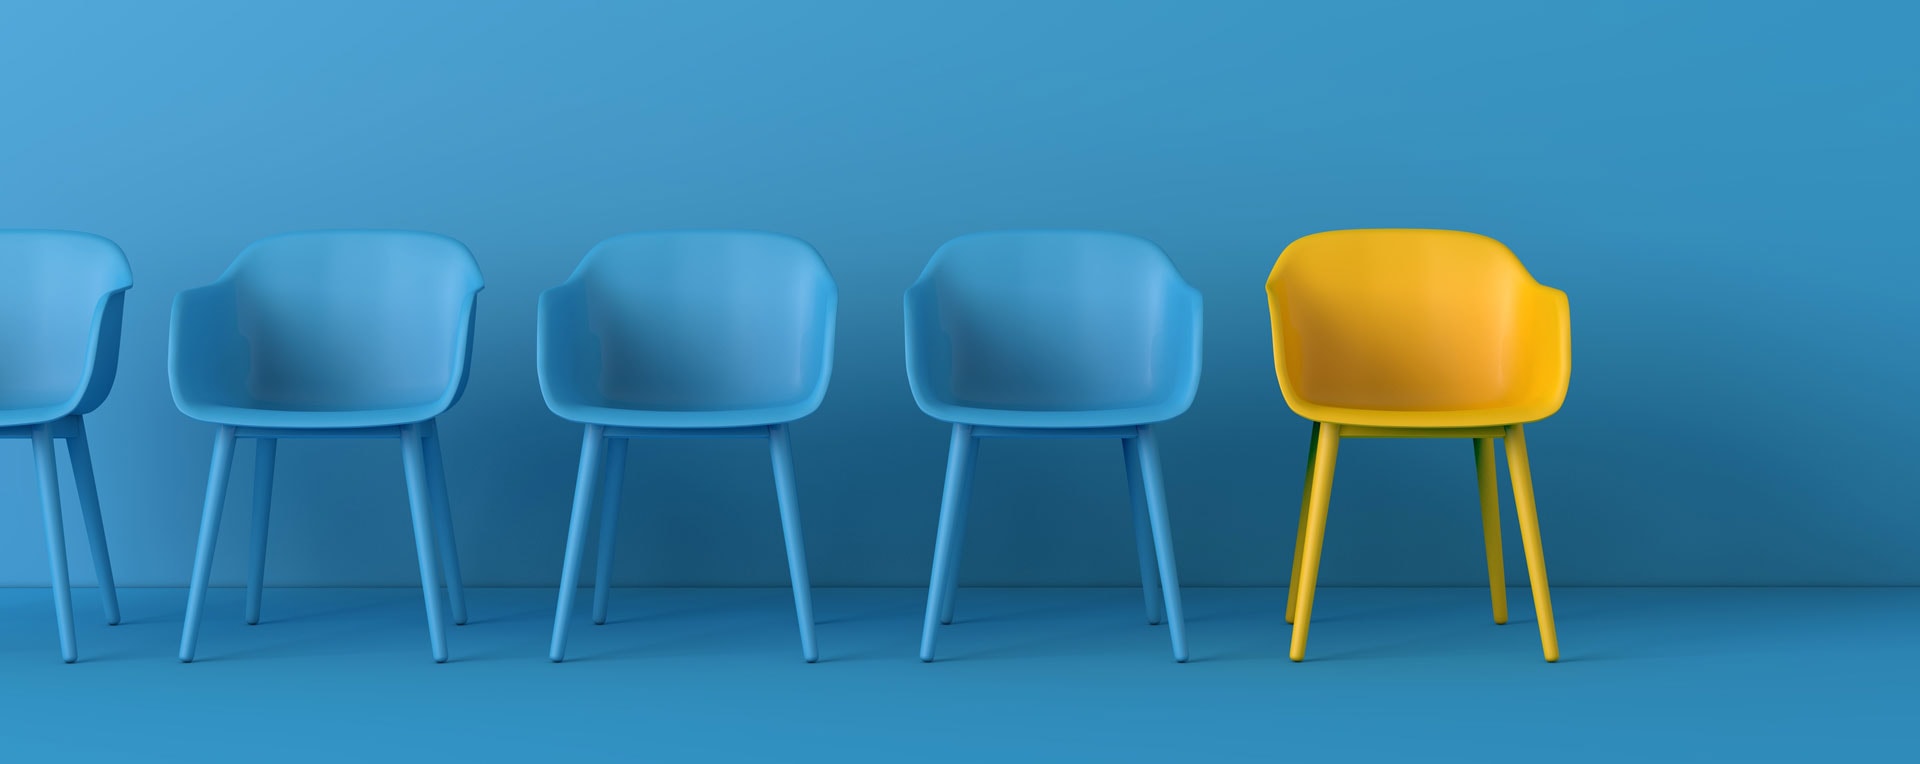 Blaue Stühle und ein gelber Stuhl